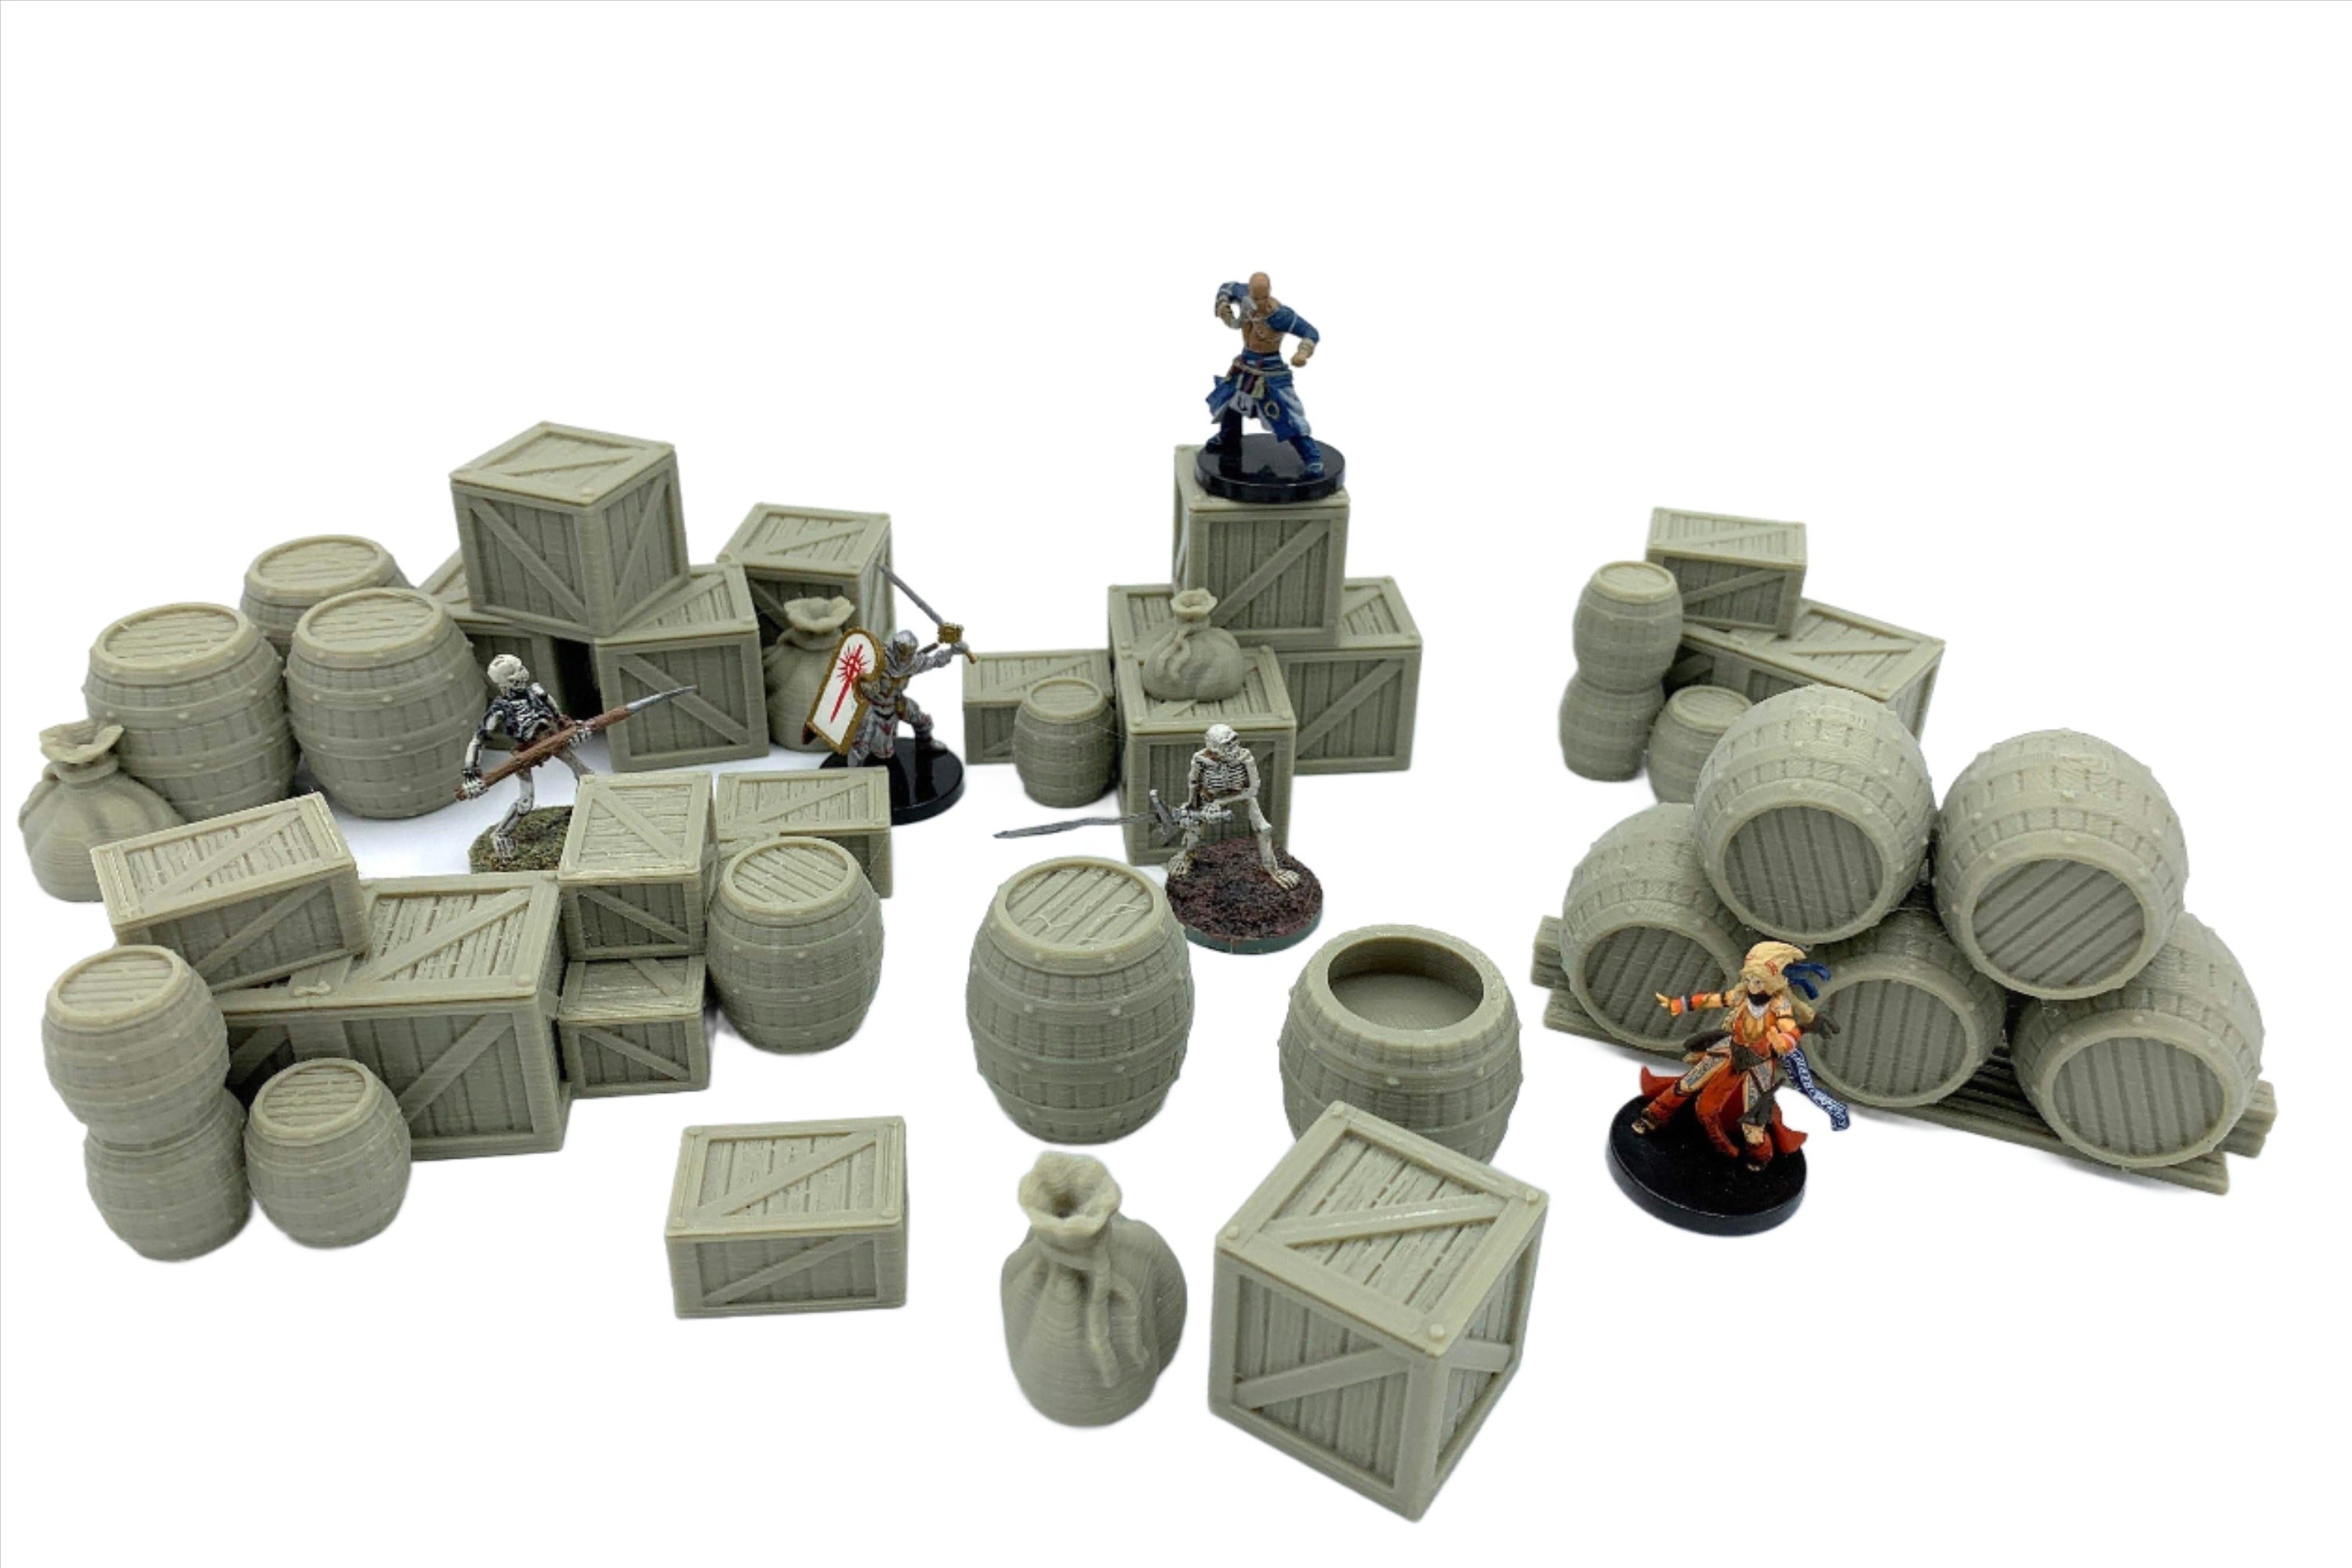 Stormguard - Barrels and Crates Scatter Terrain / 28mm Wargame / RPG 3d Printed Tabletop Wargaming Terrain